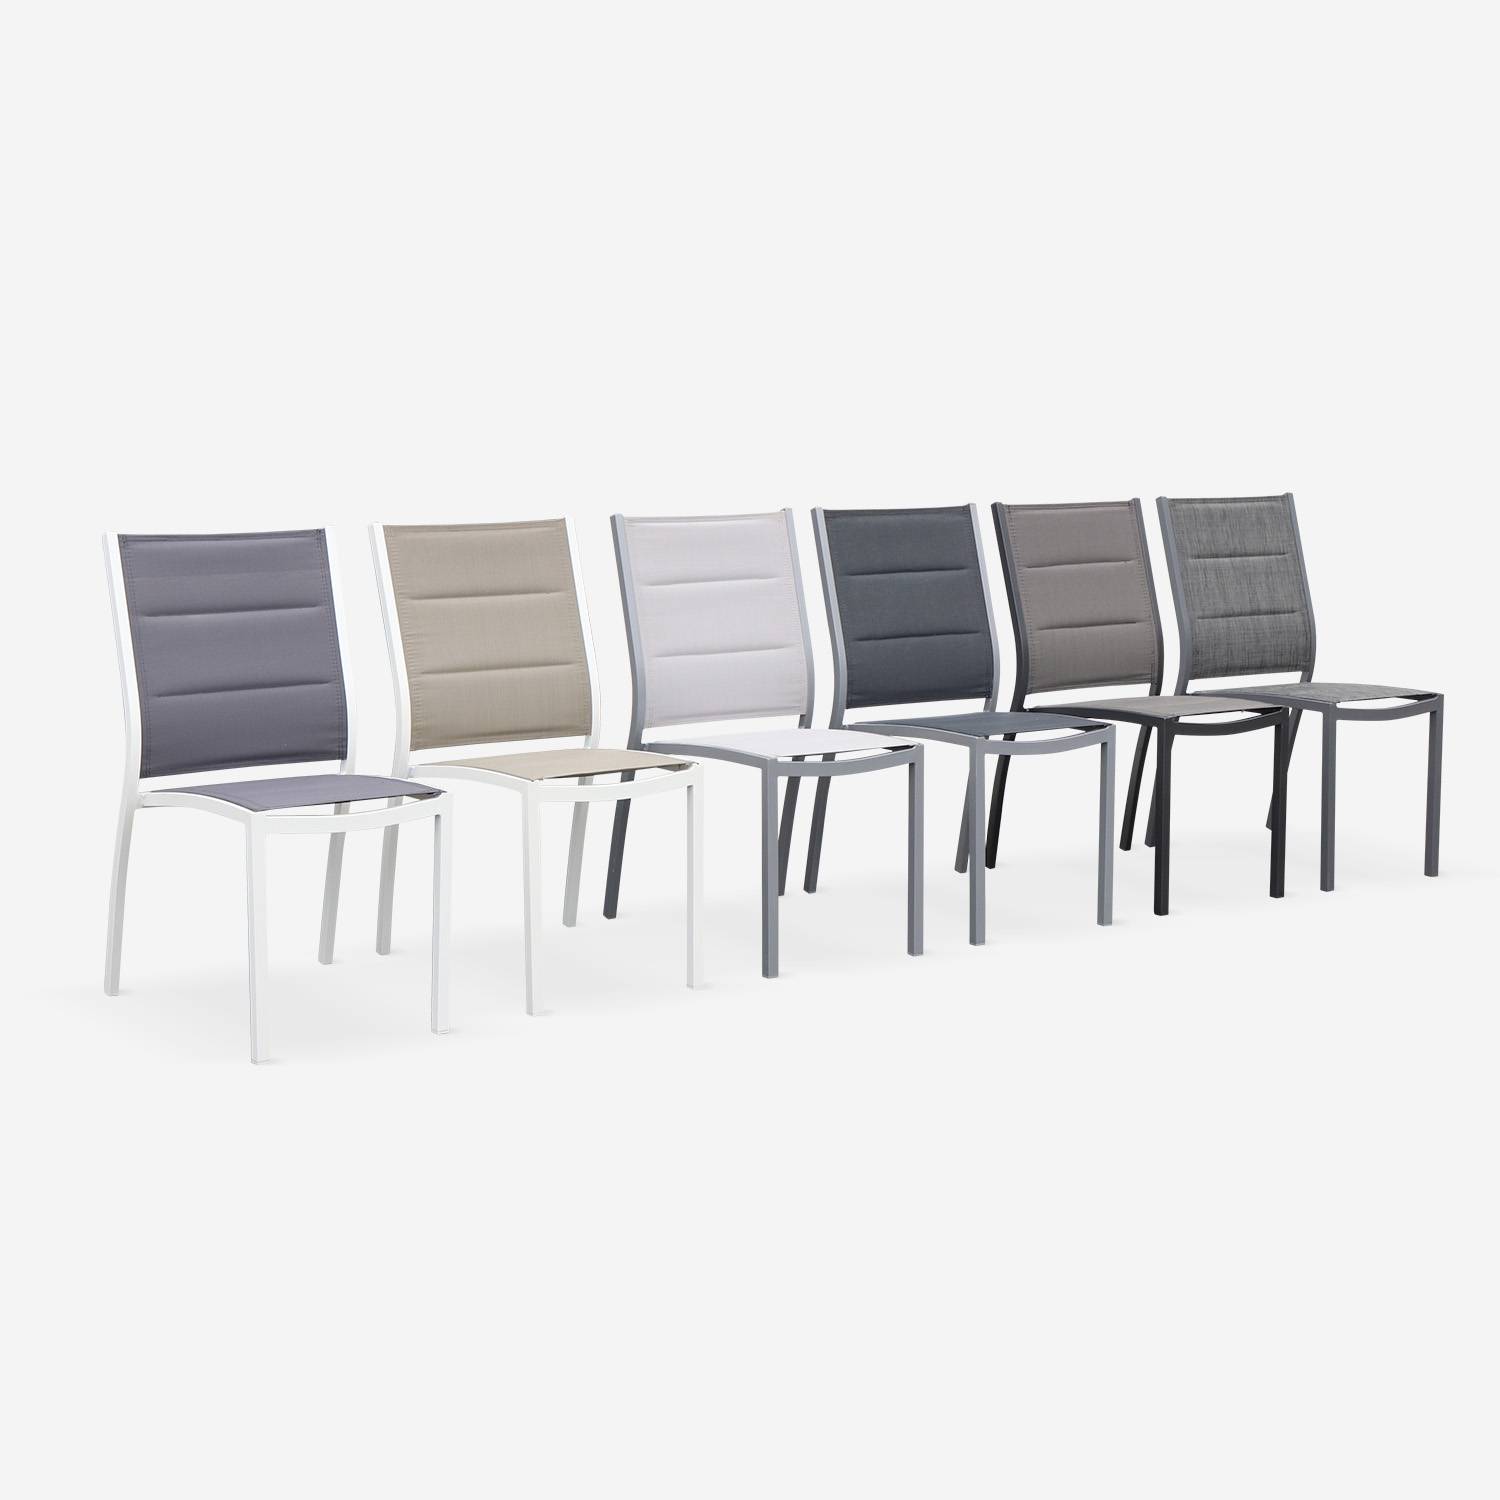 Coppia di sedie Chicago/Odenton in alluminio e textilene colore grigio scuro,sweeek,Photo7